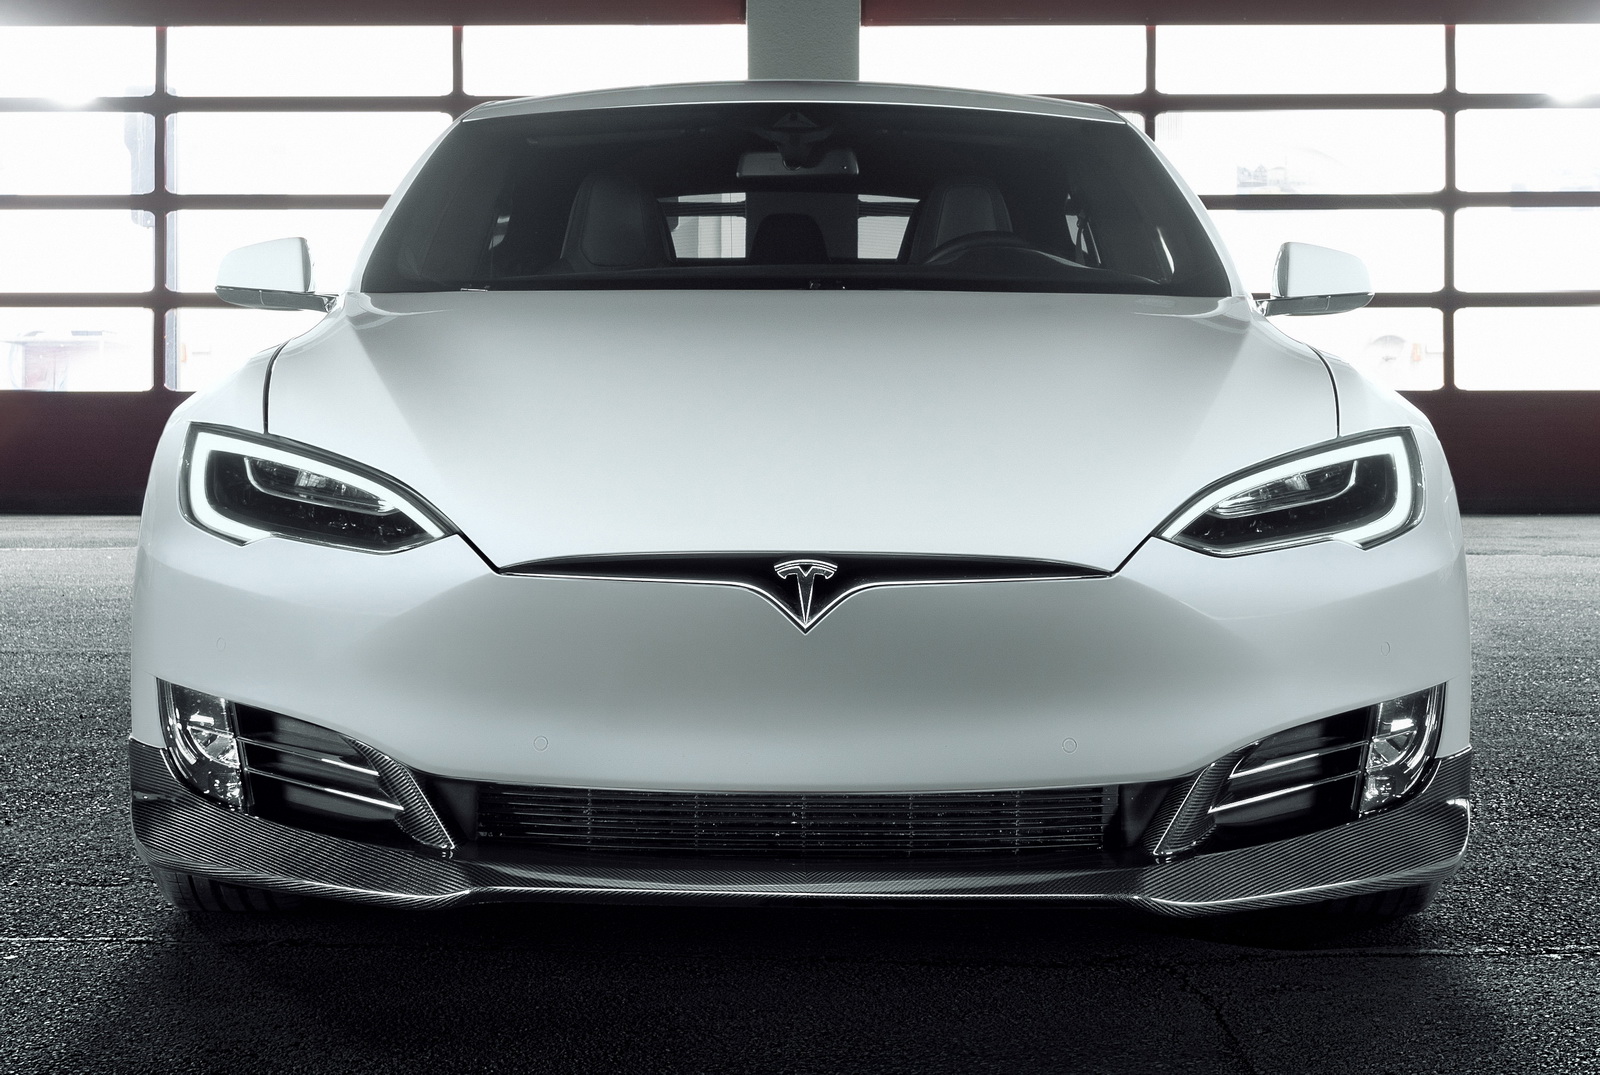 Tesla Model S by Novitec